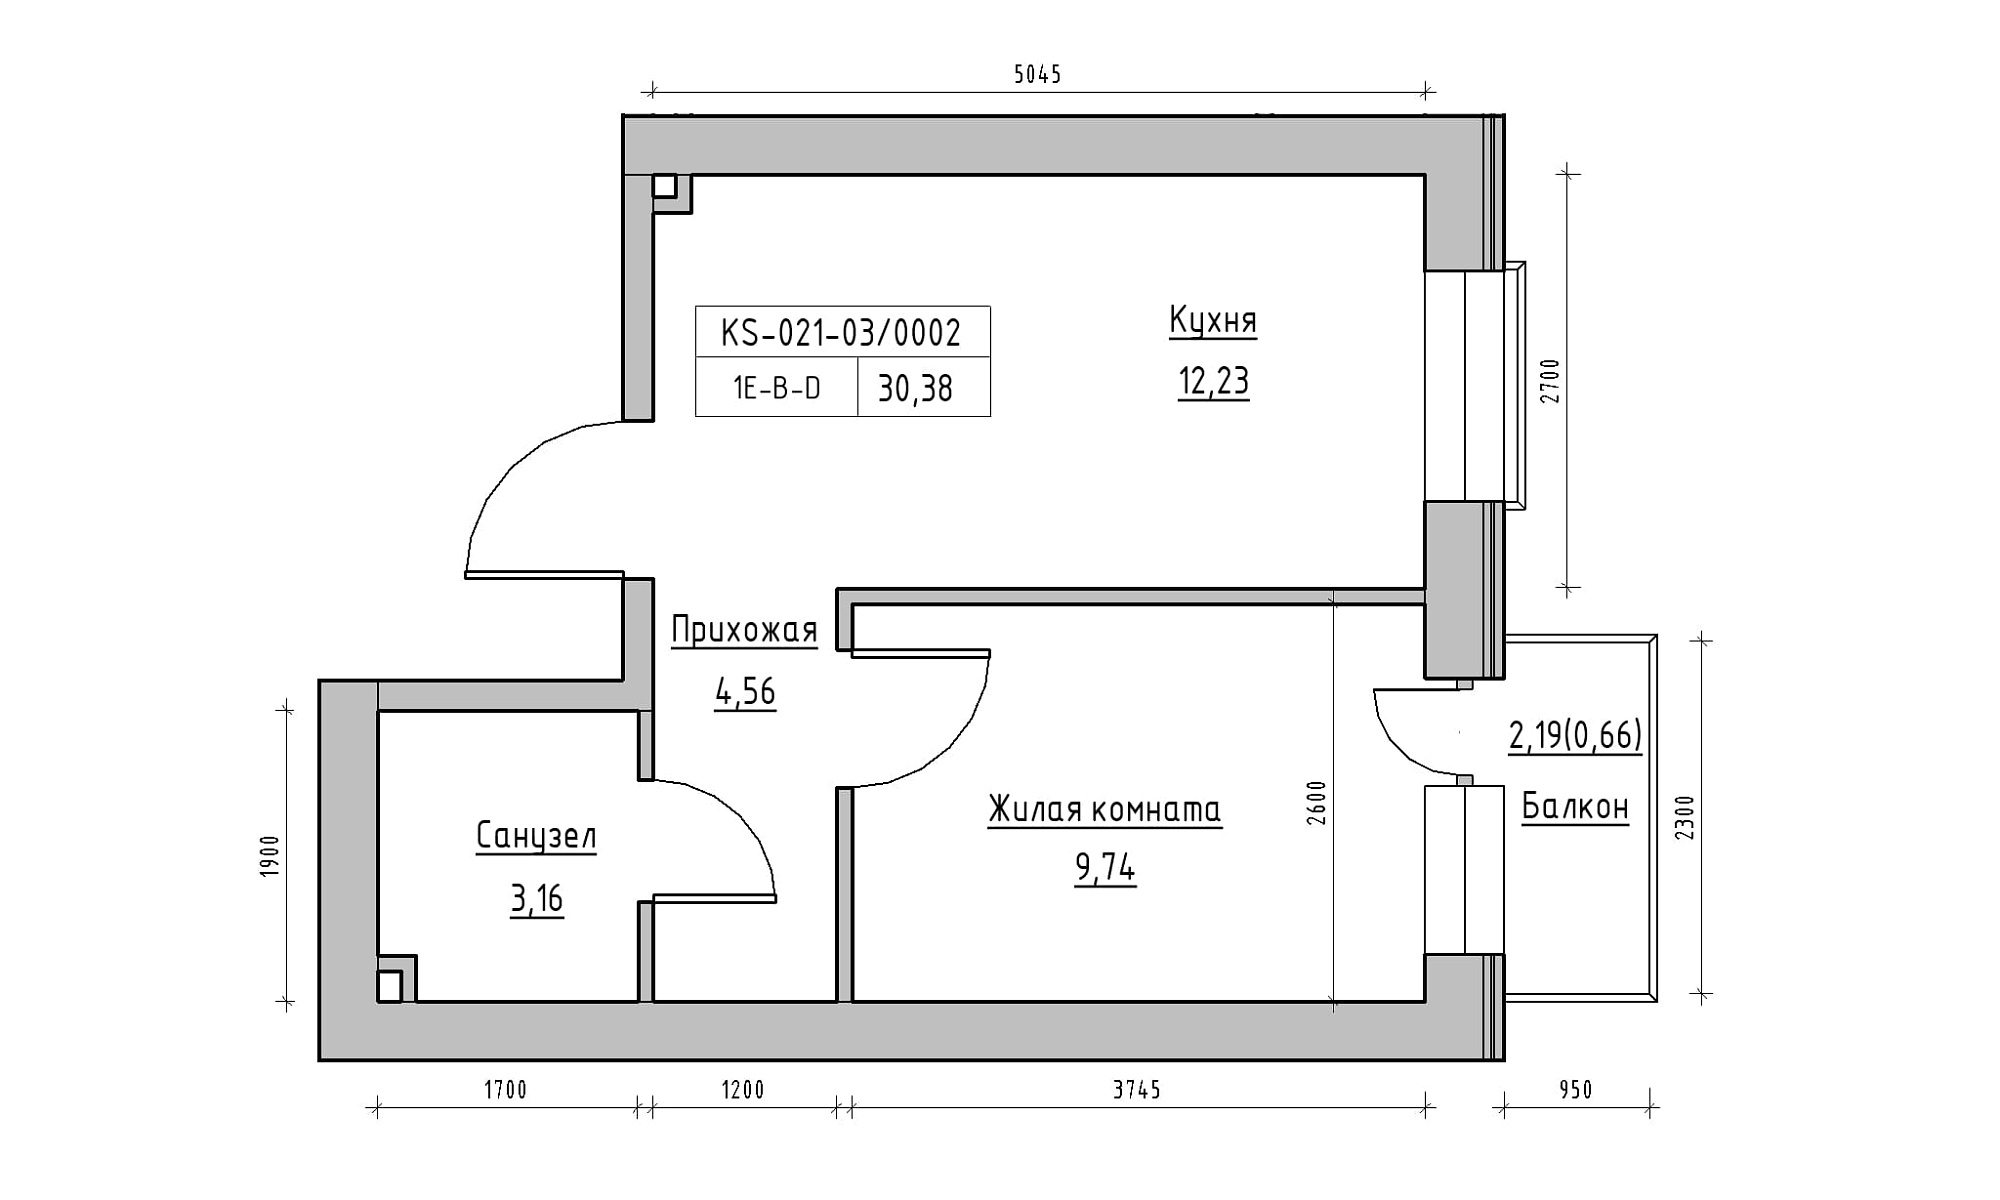 Планування 1-к квартира площею 30.38м2, KS-021-03/0002.